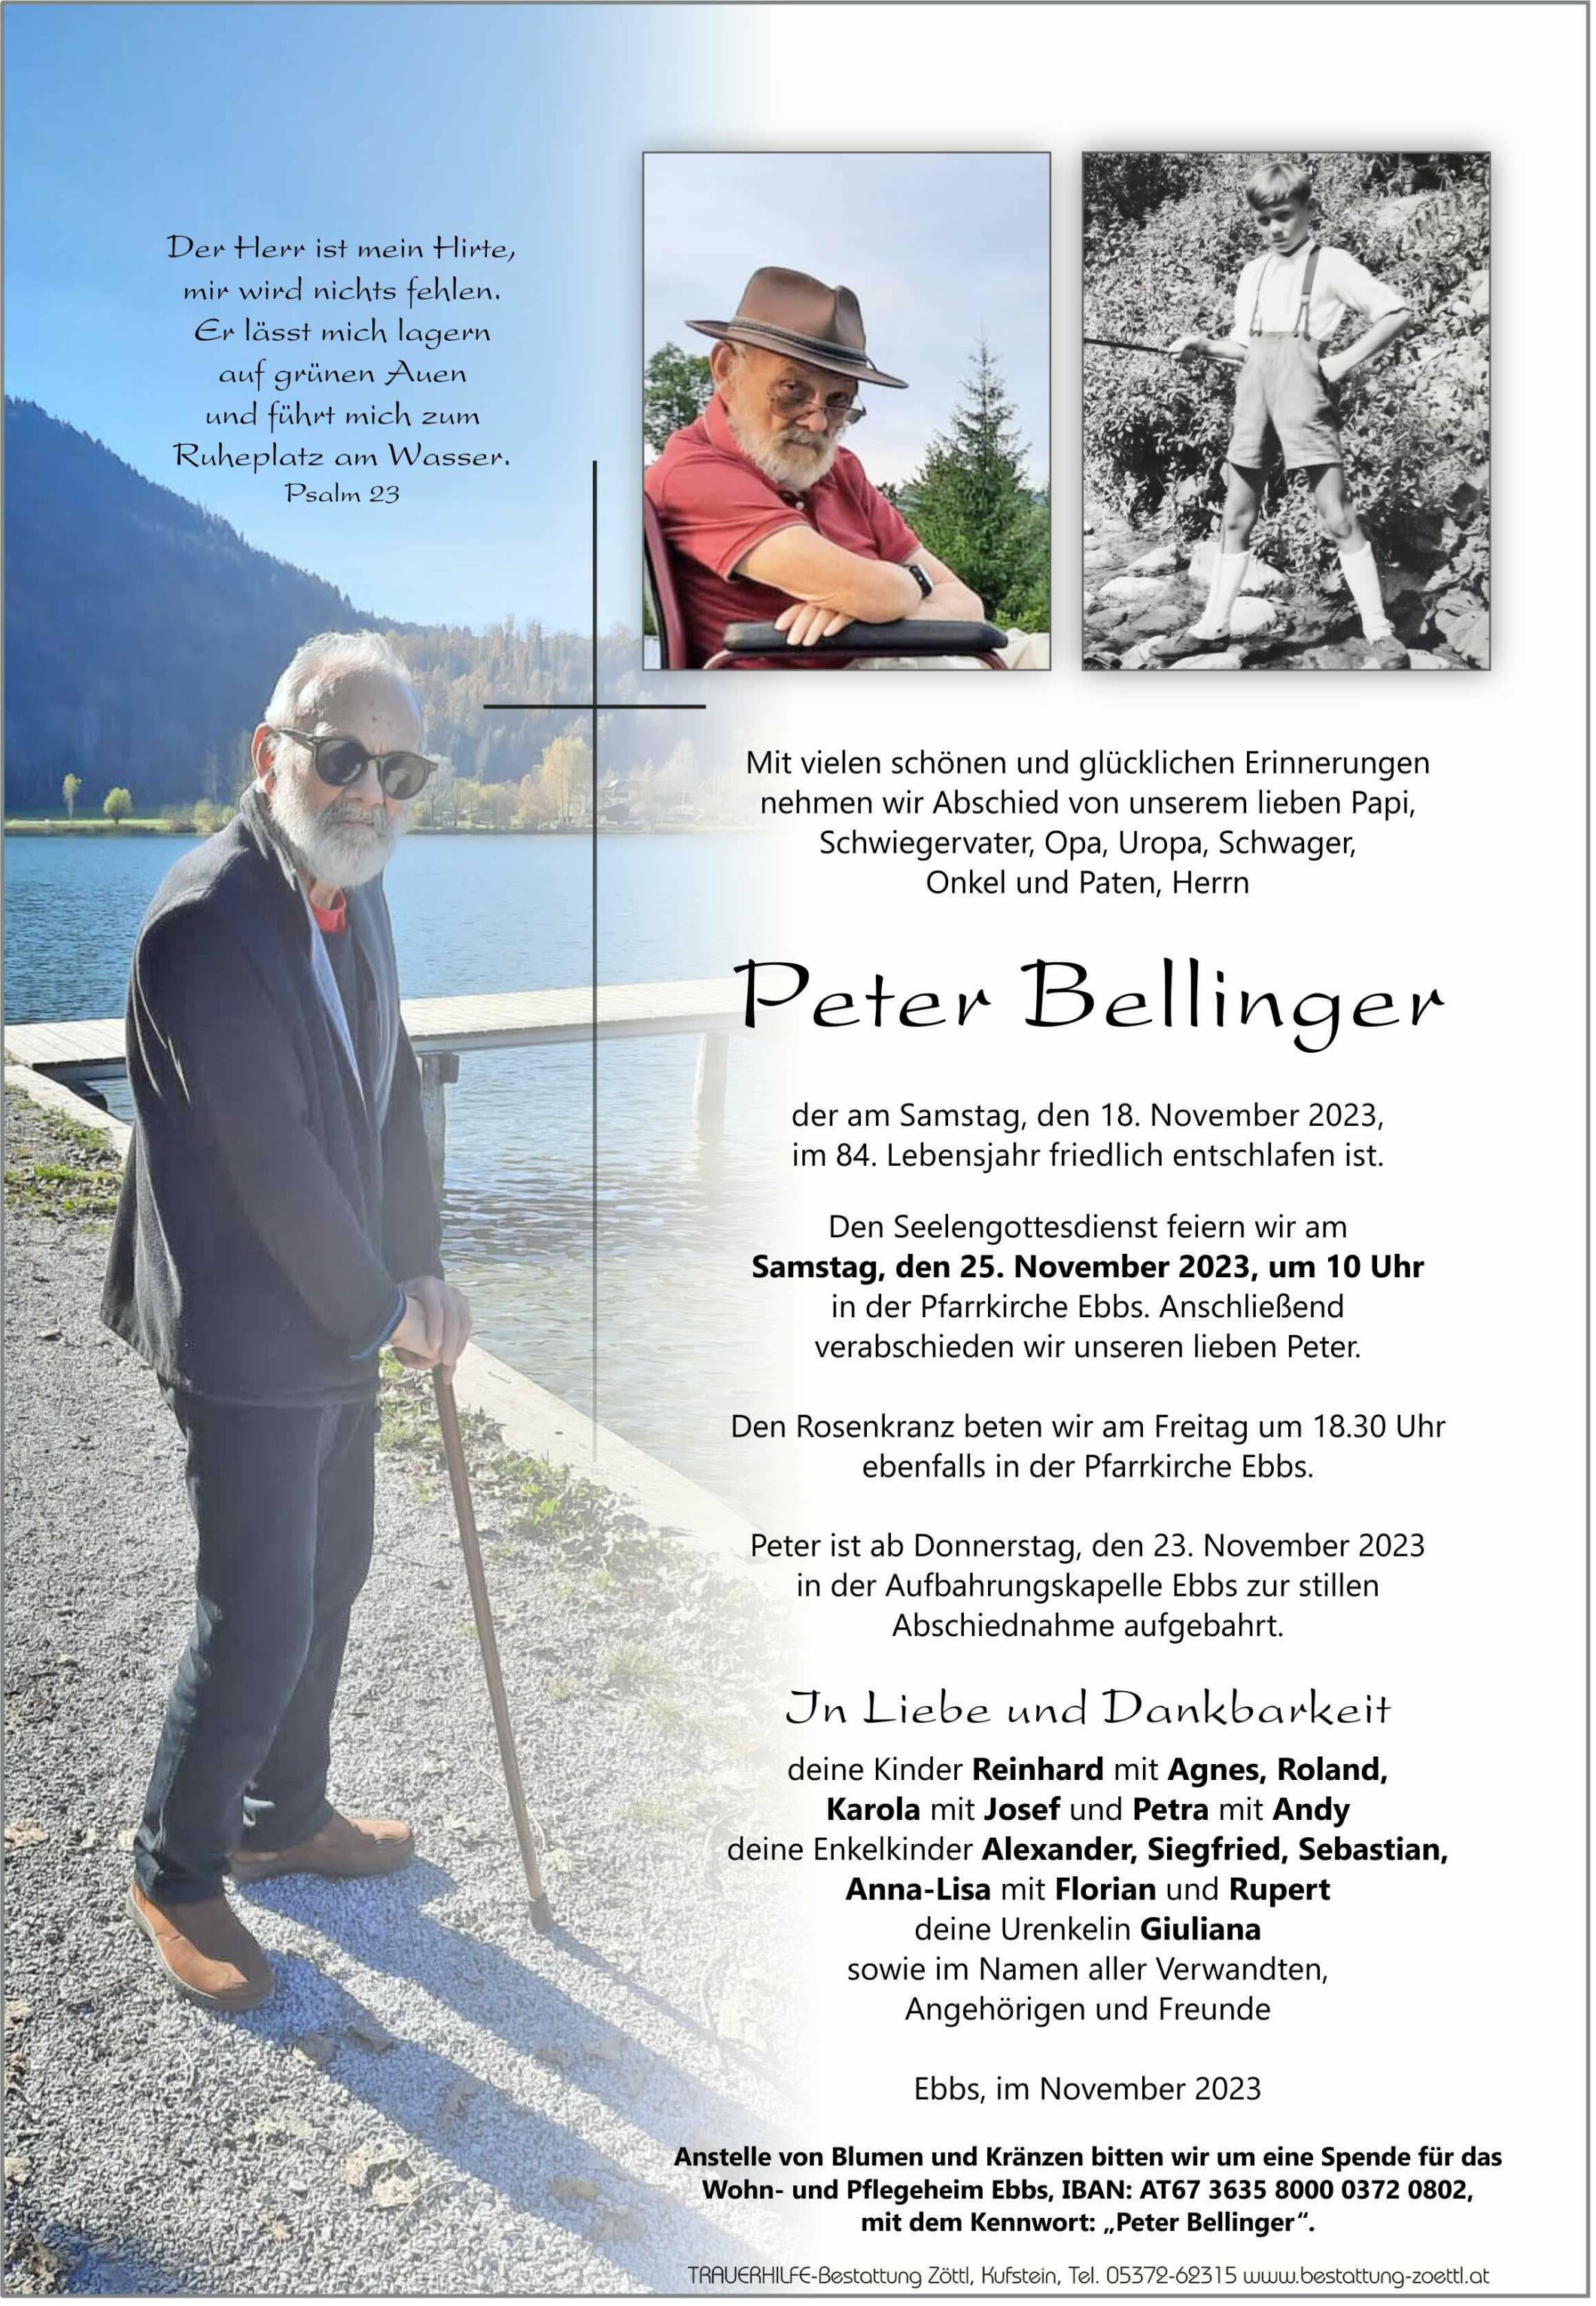 Peter Bellinger